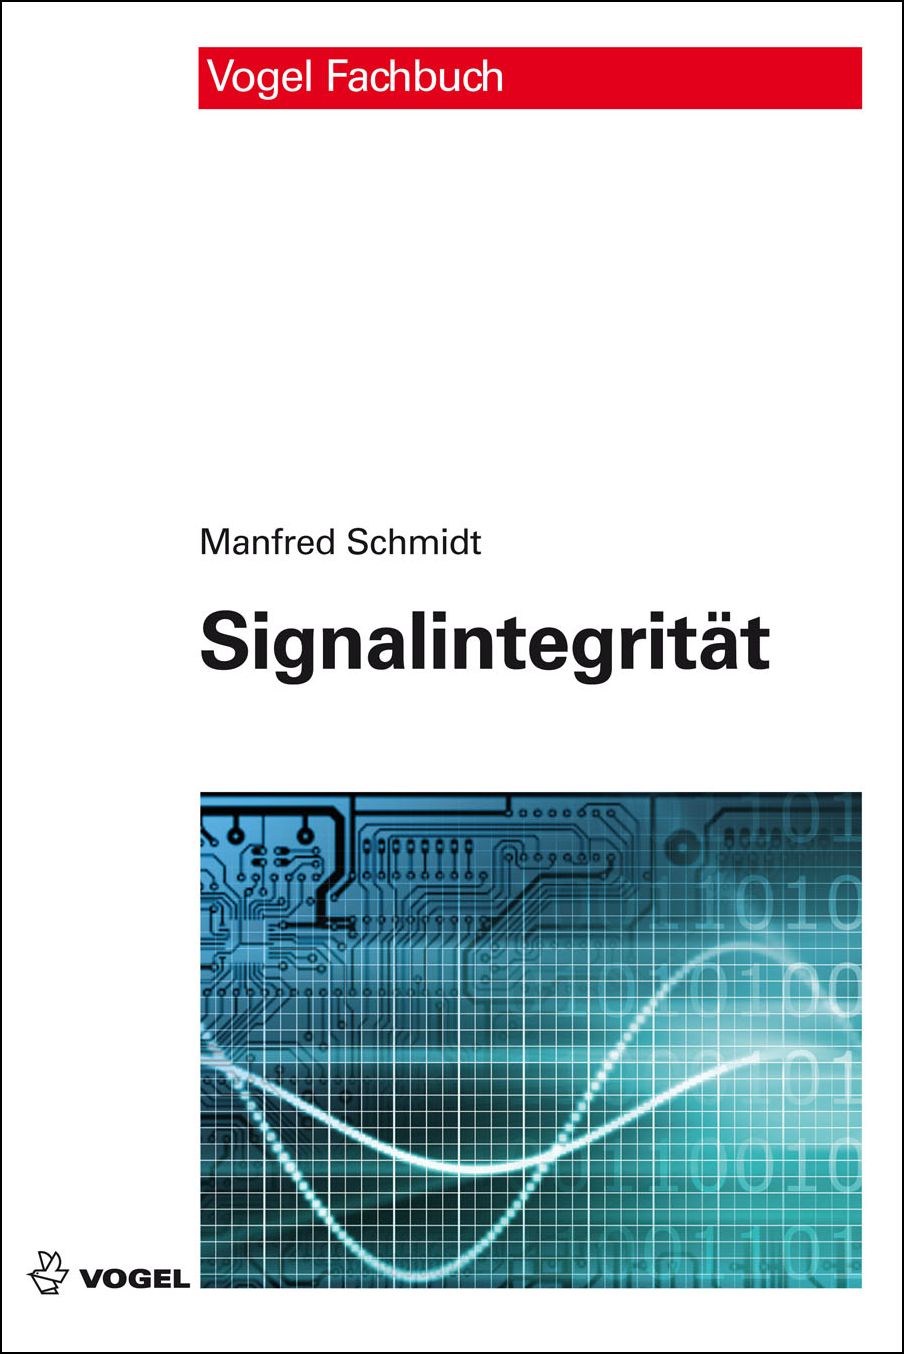 Das Fachbuch "Signalintegrität" von Manfred Schmid